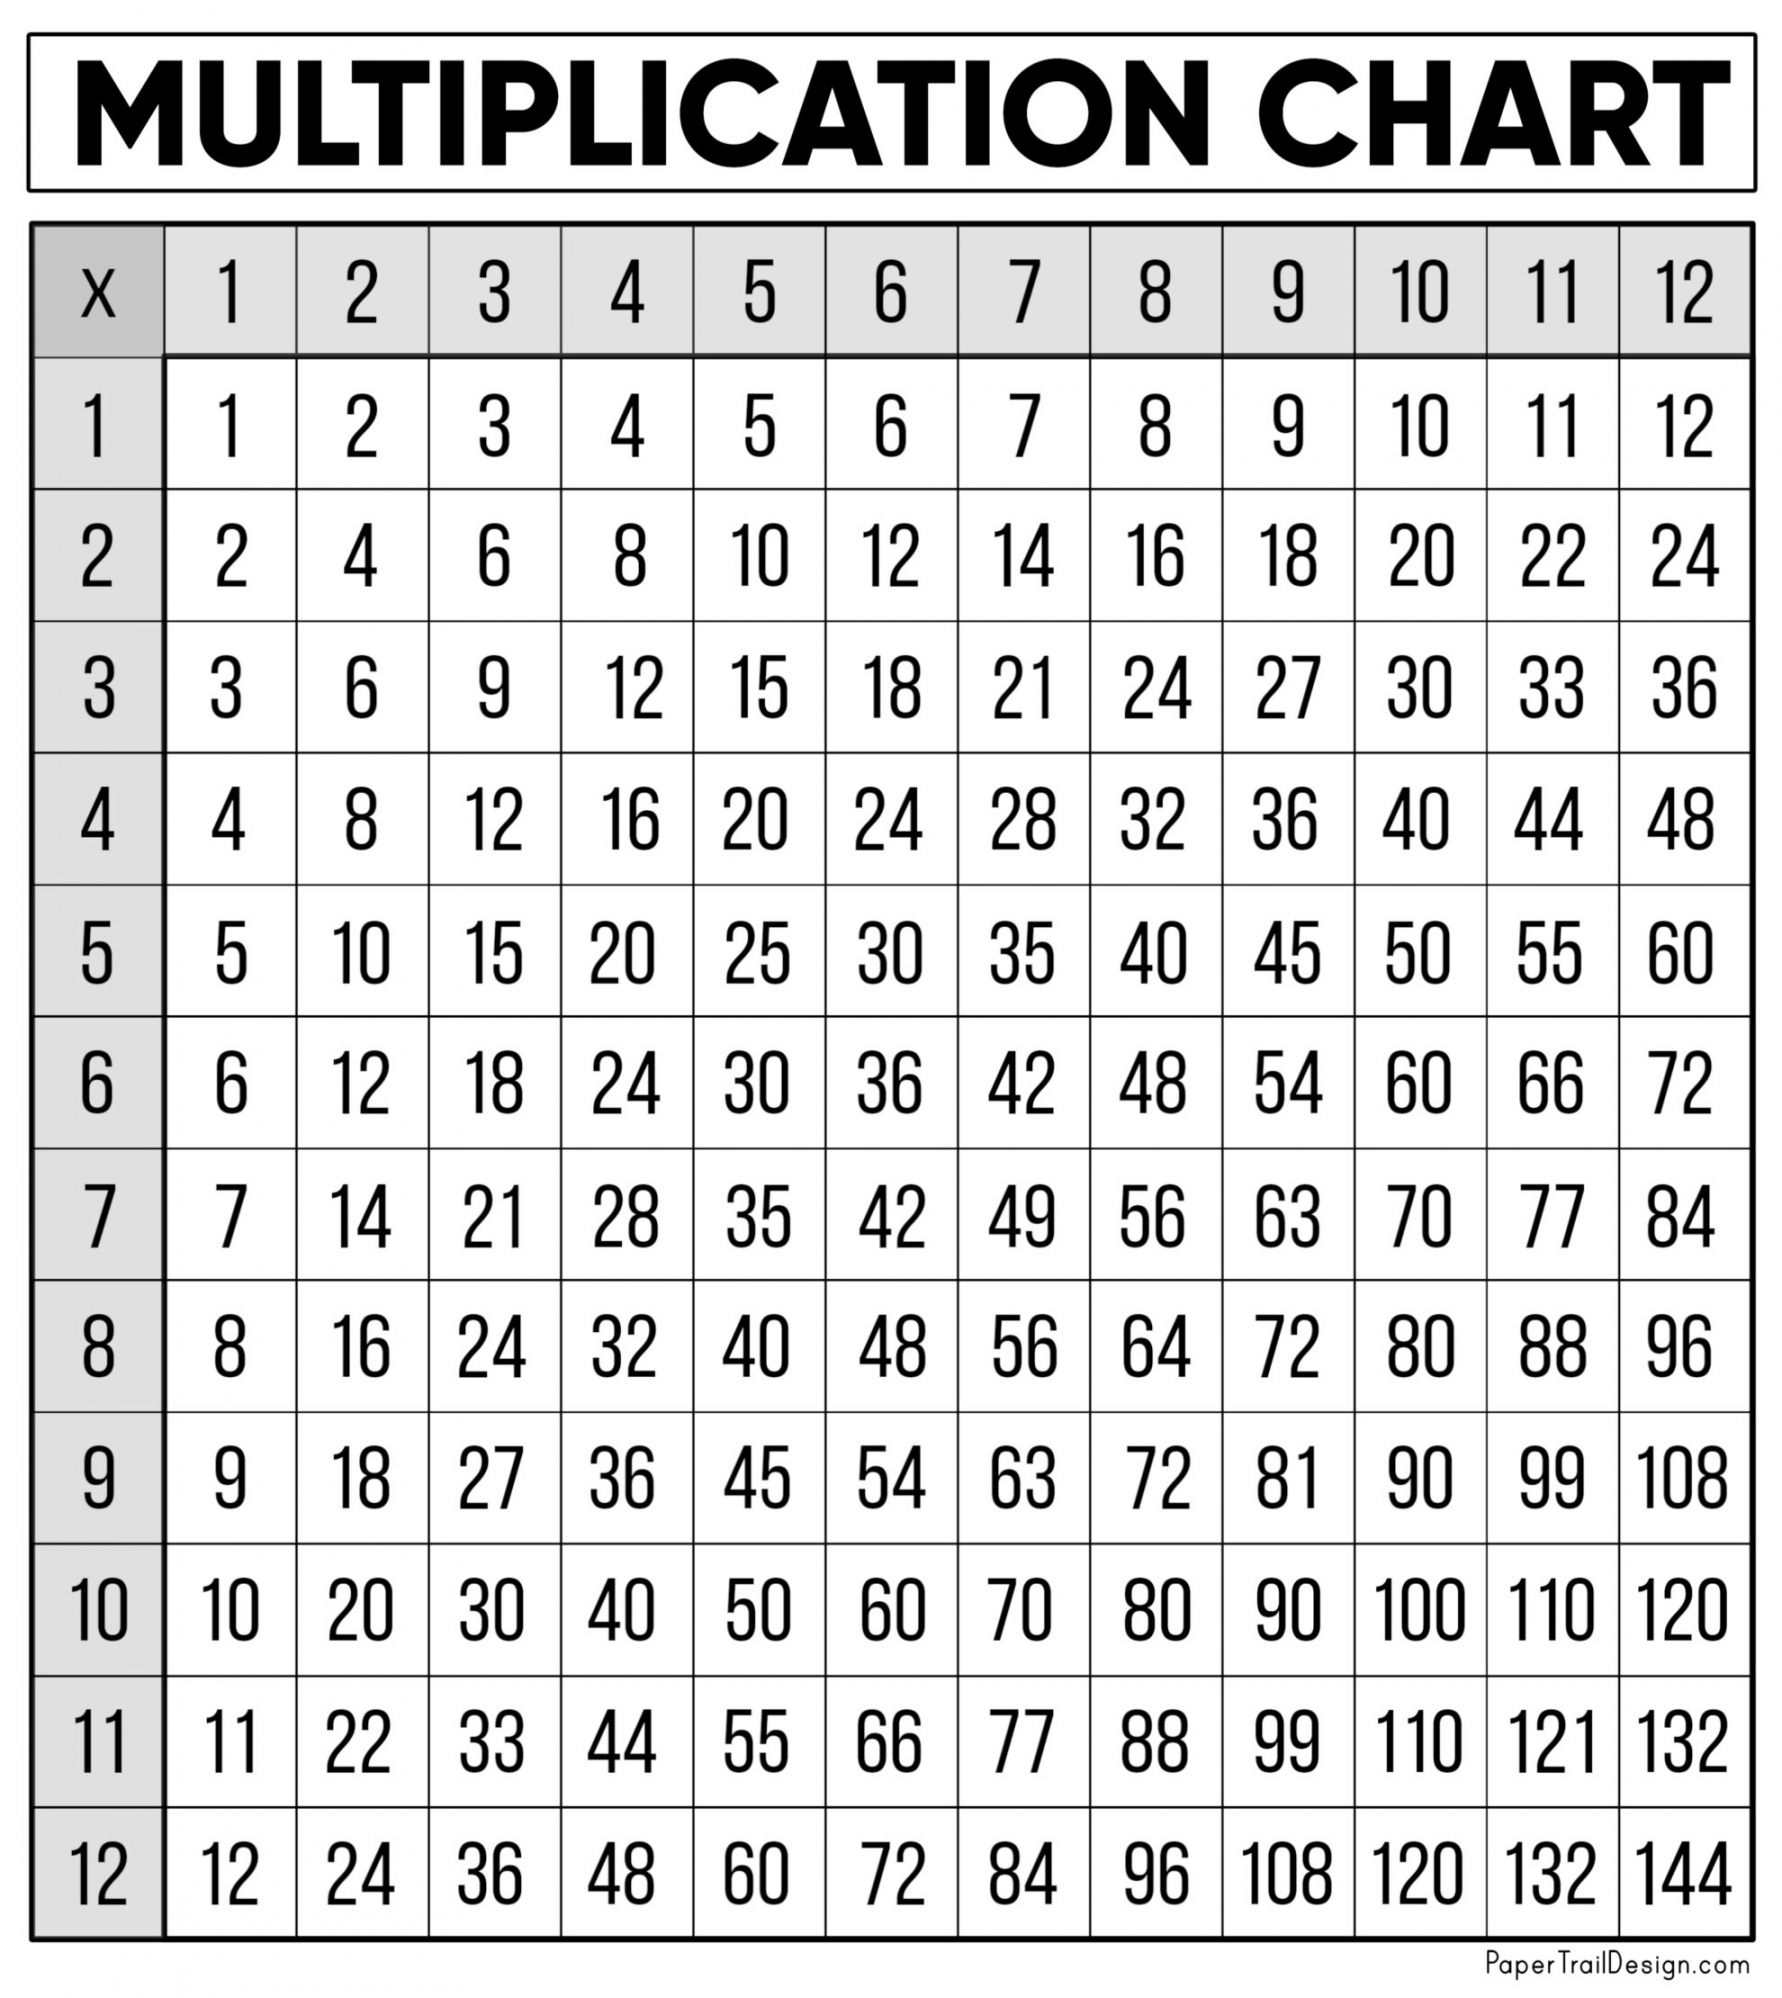 Free Printable Multiplication Table - Printable - Free Multiplication Chart Printable - Paper Trail Design